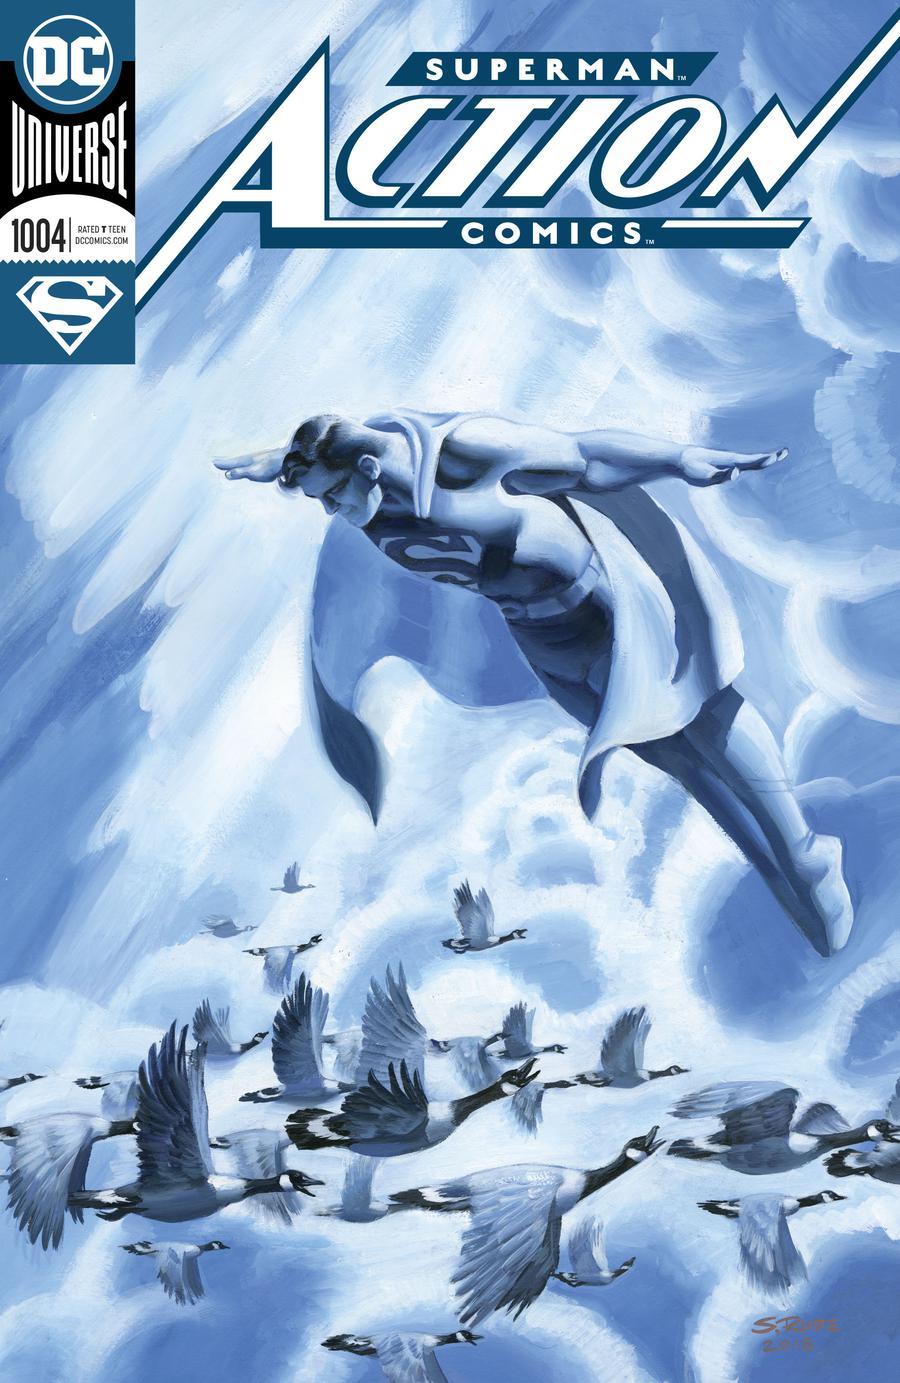 Action Comics Vol. 2 #1004